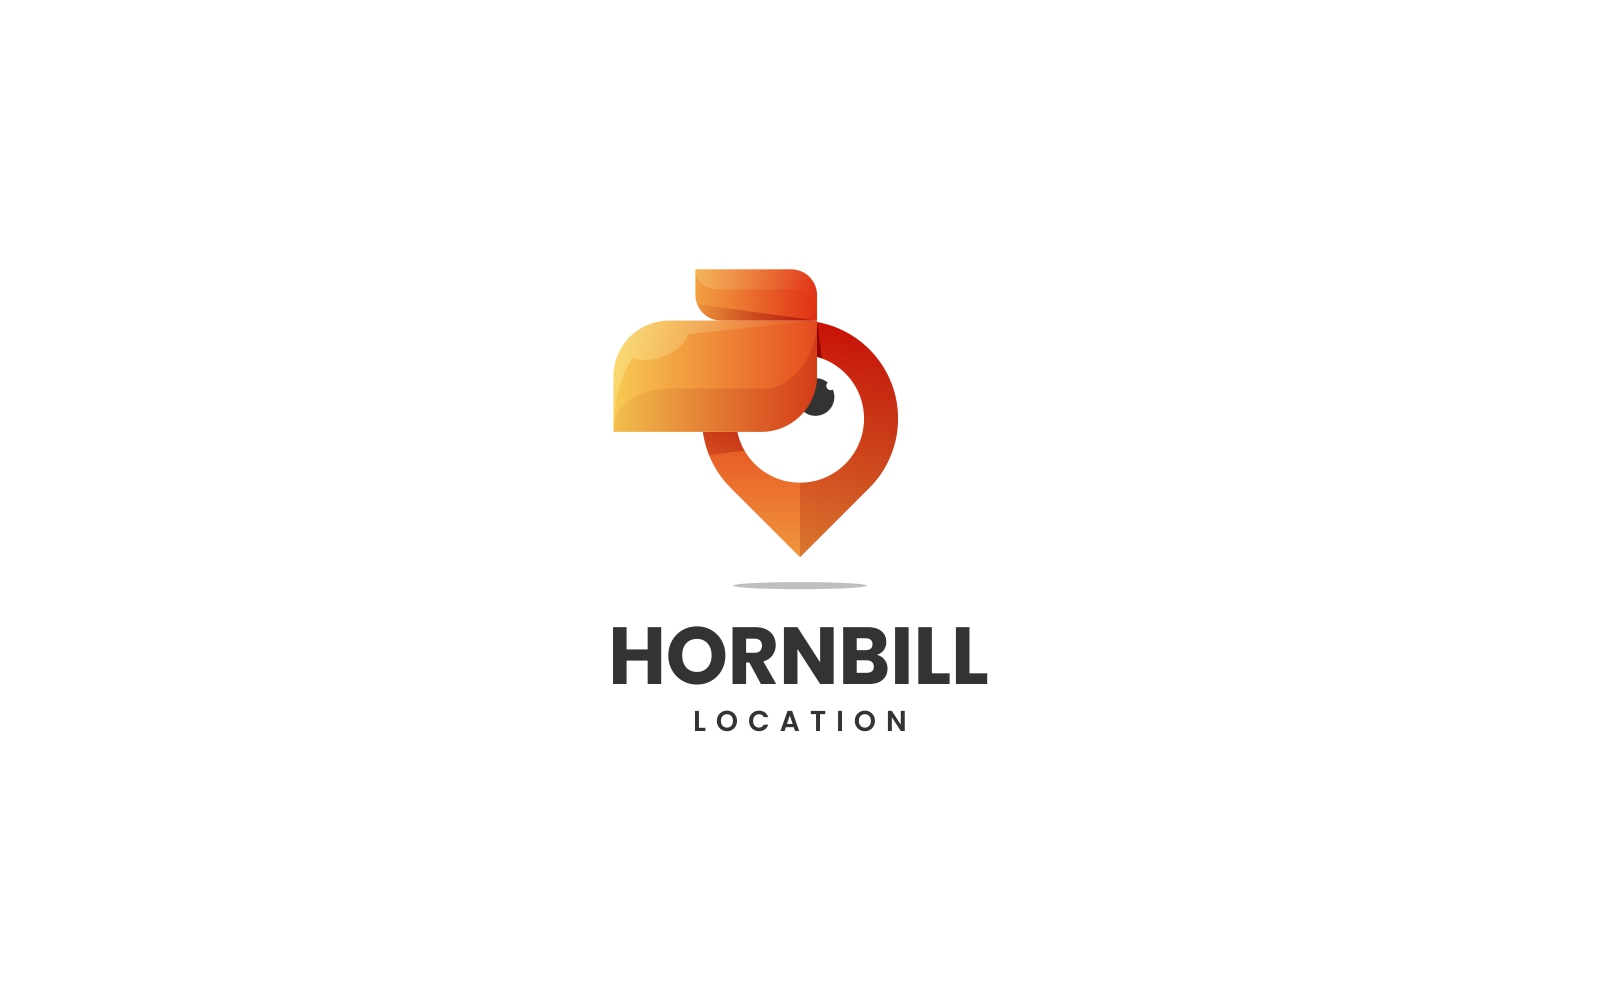 Hornbill Logo - Design Template Place